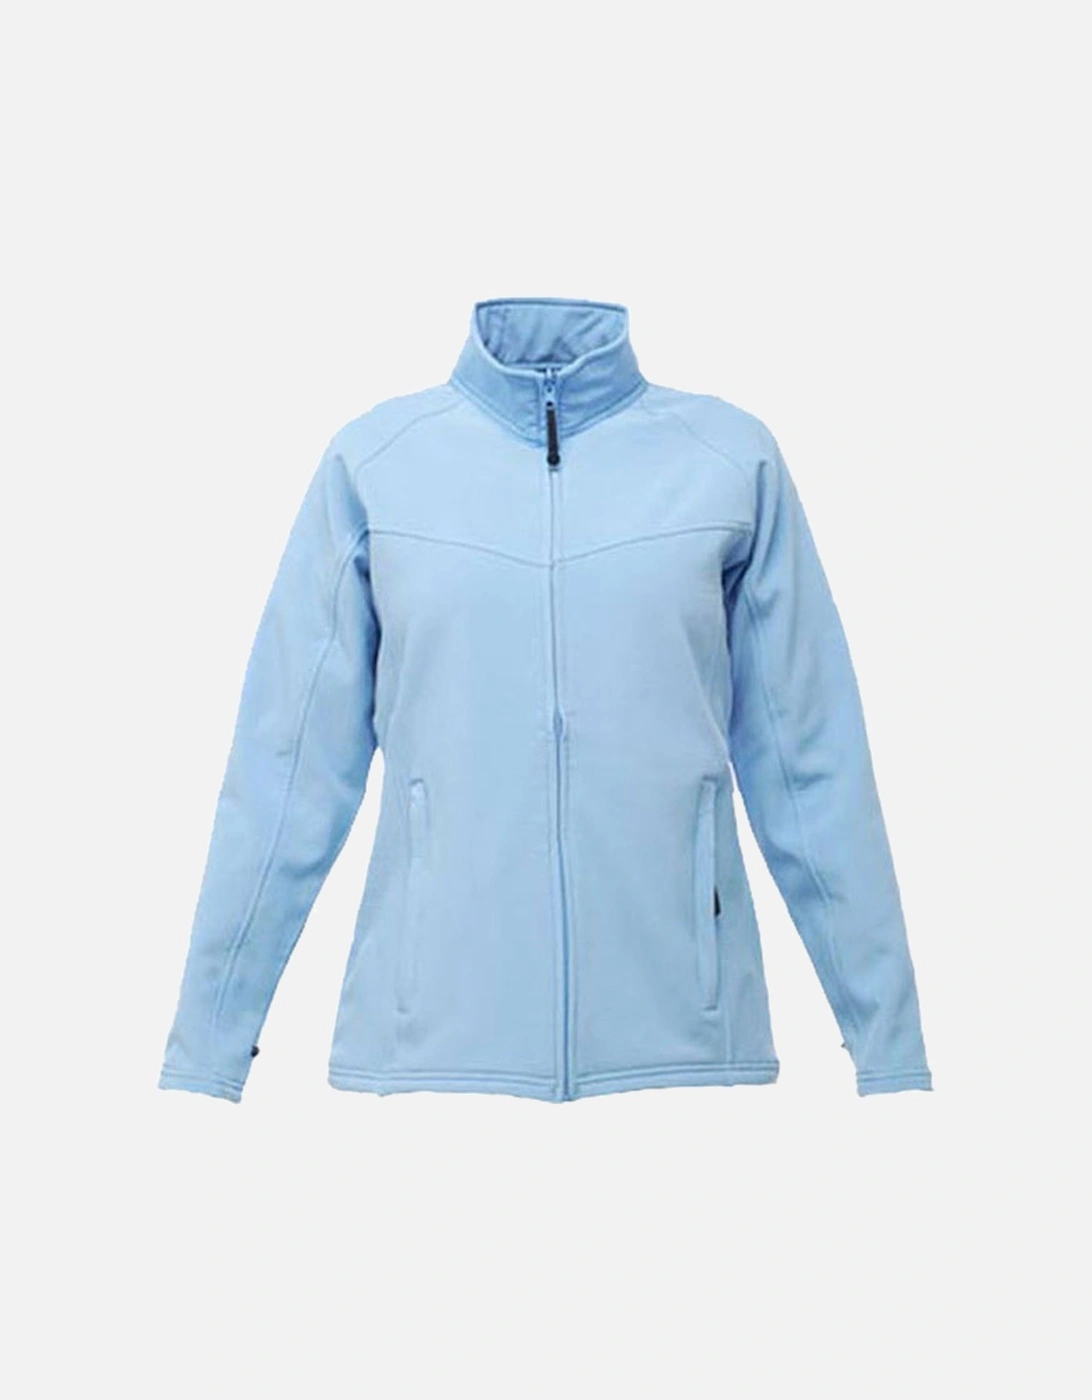 Womens Uproar Wind Resistant Softshell Jacket, 2 of 1